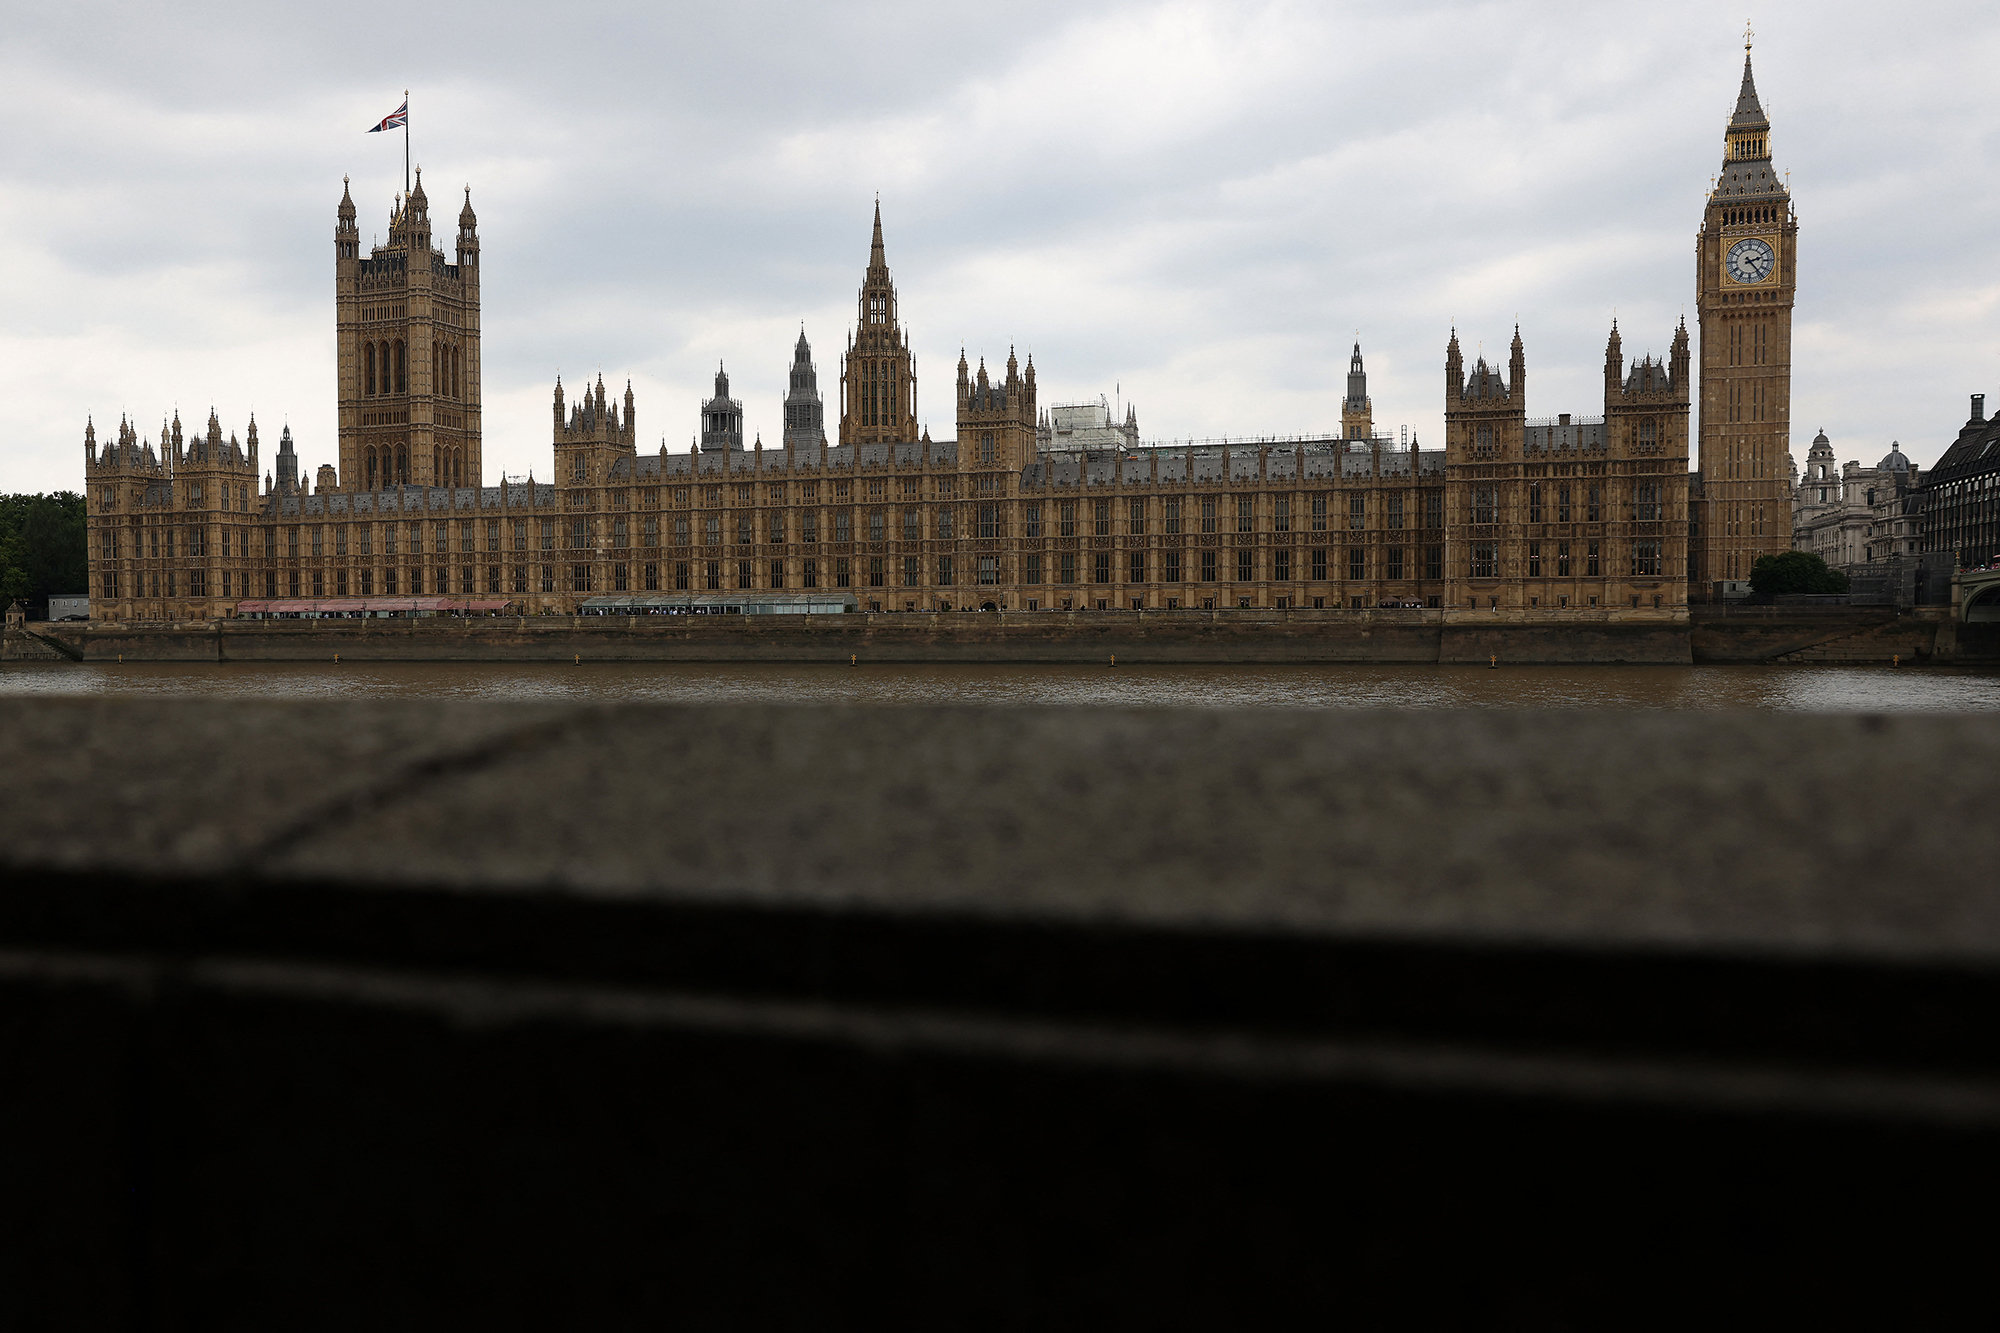 Der Palace of Westminster in London ist das britische Parlamentsgebäude, in dem das Oberhaus und das Unterhaus untergebracht sind